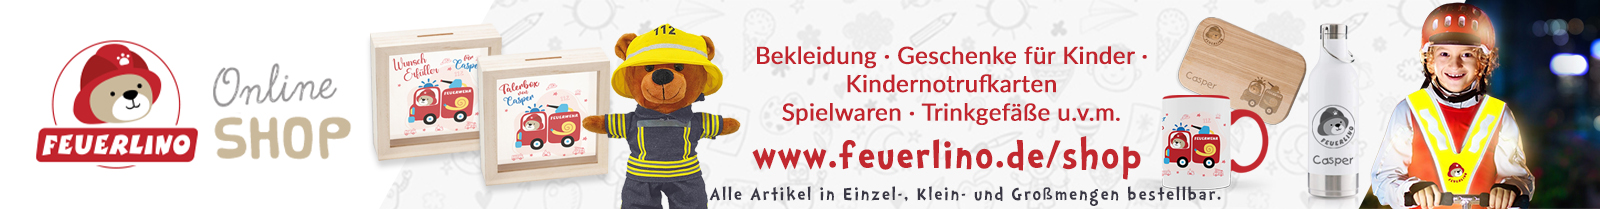 Feuerlino Onlineshop - Fanshop für kleine Feuerwehrfans - Kindernotrufkarten und Notfall-Ausweise online bestellen